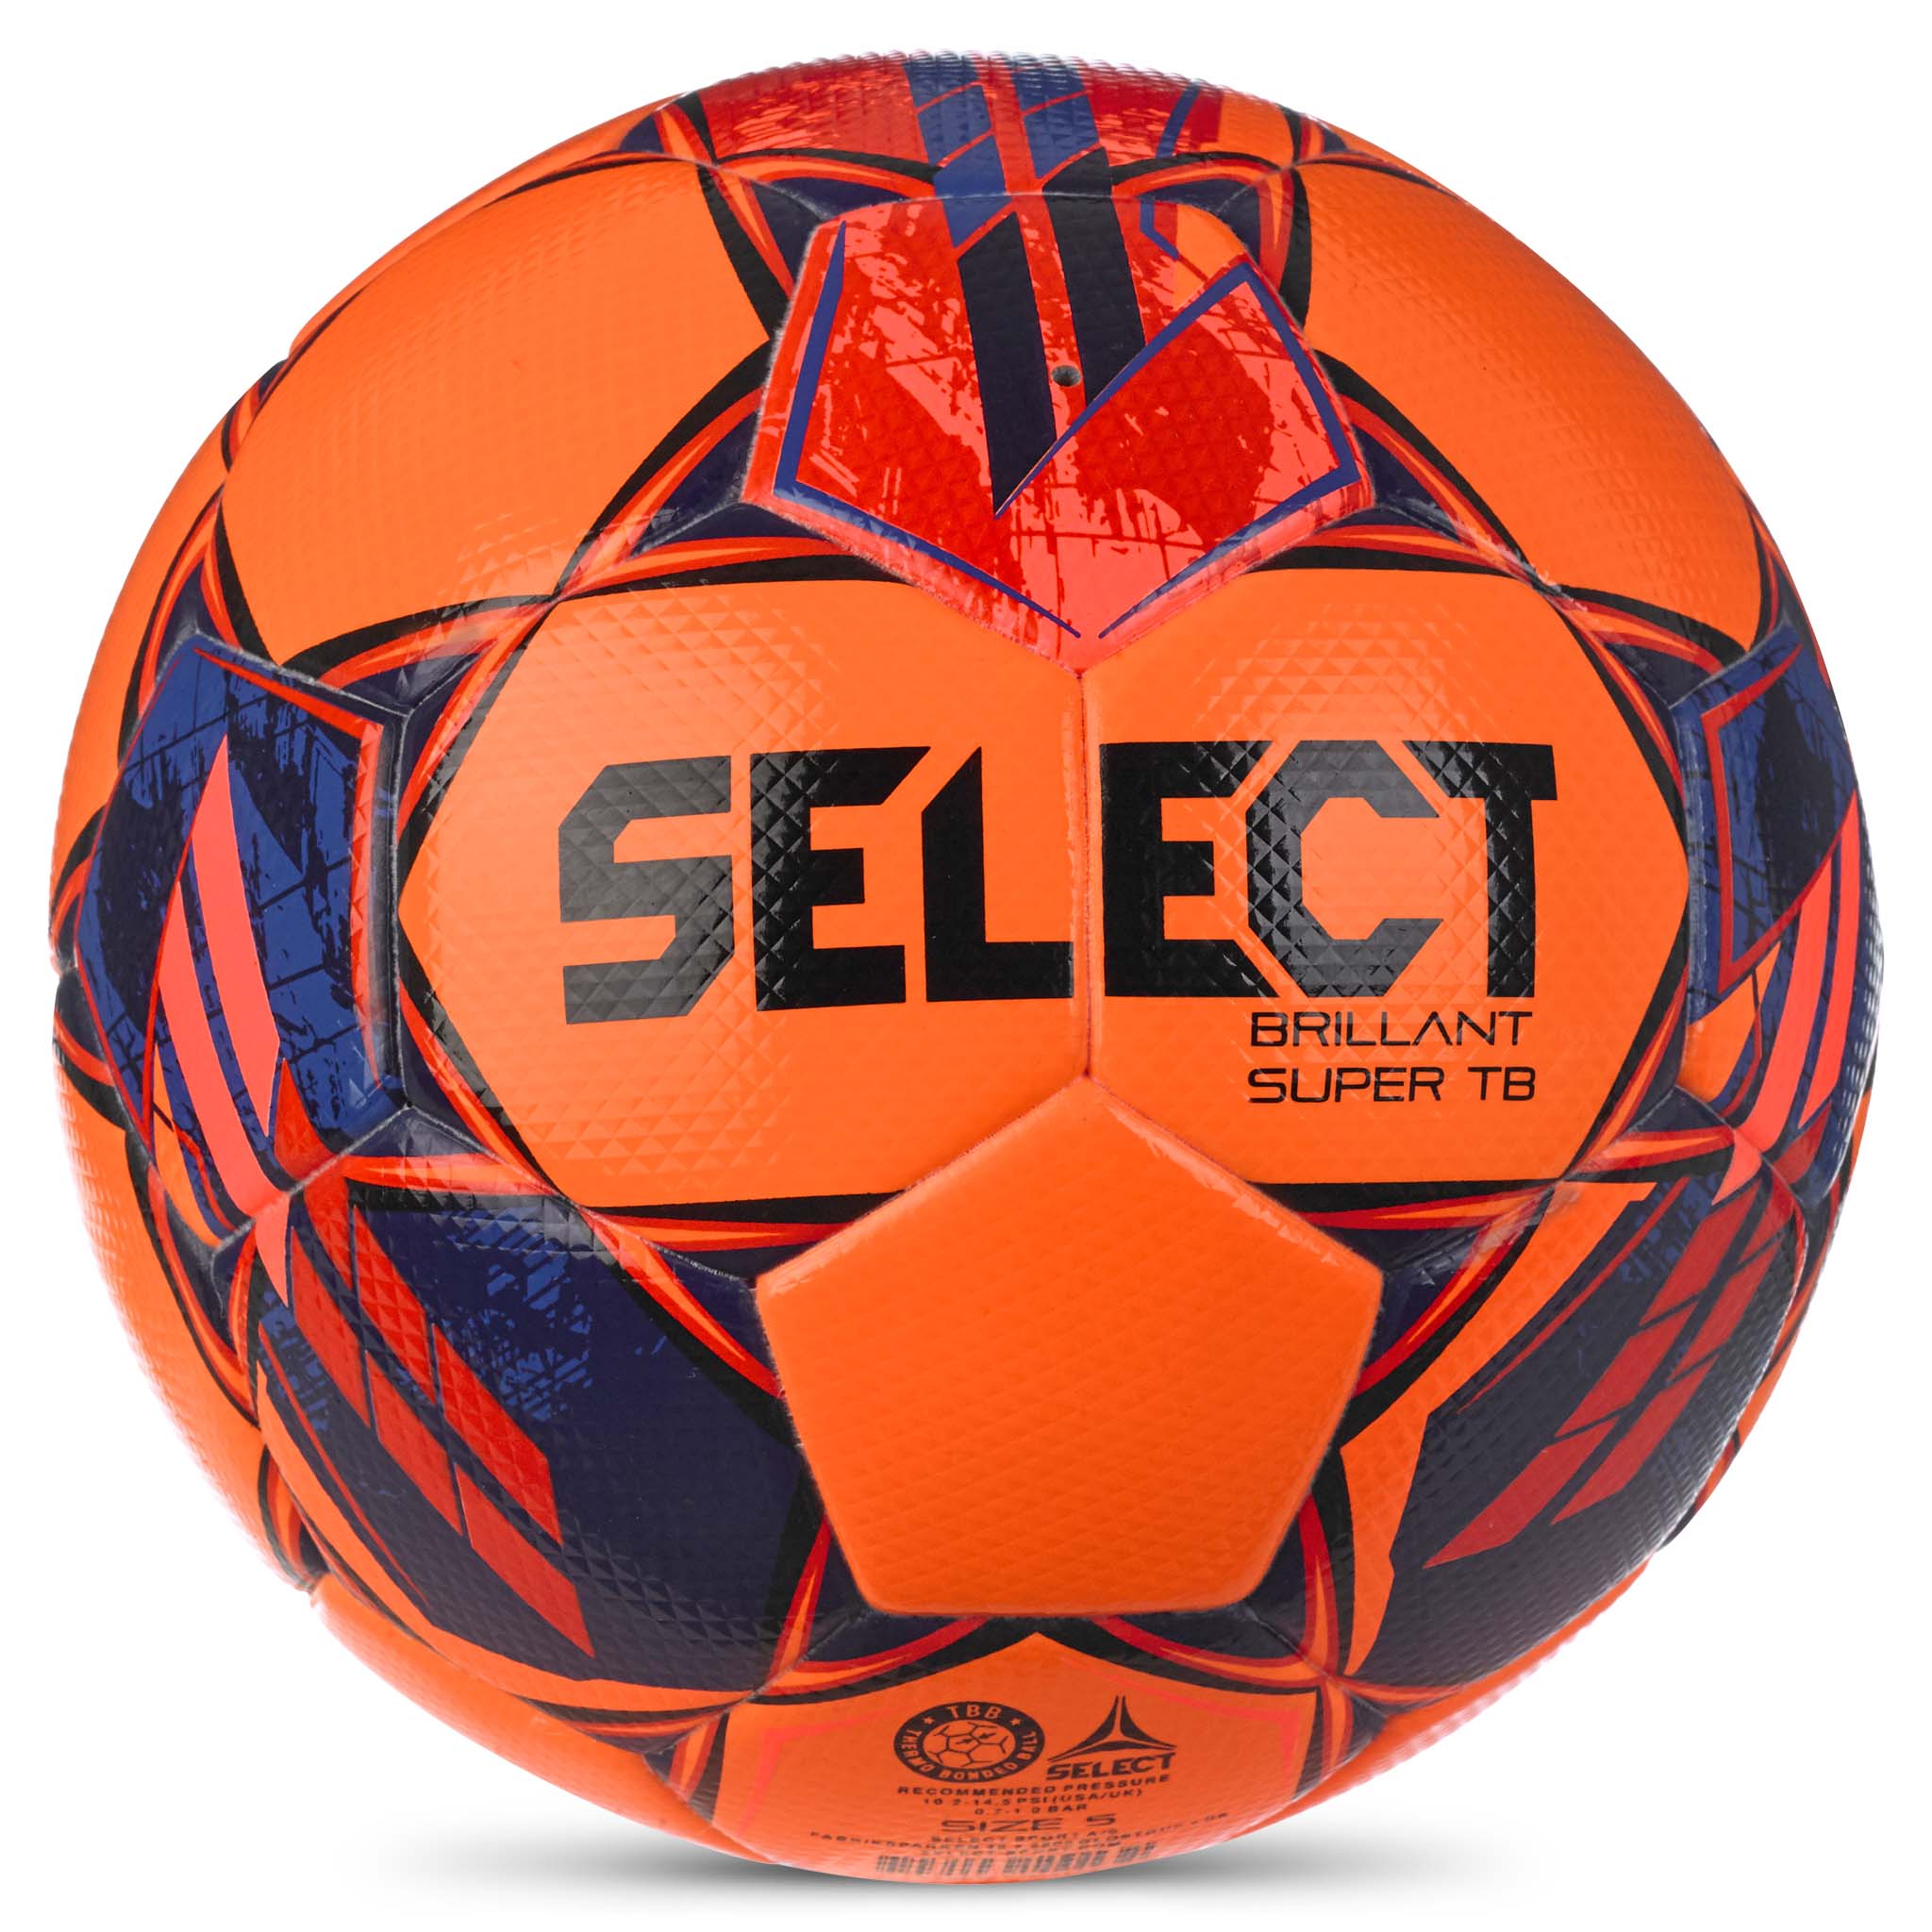 Football - Brillant Super TB #colour_orange/red